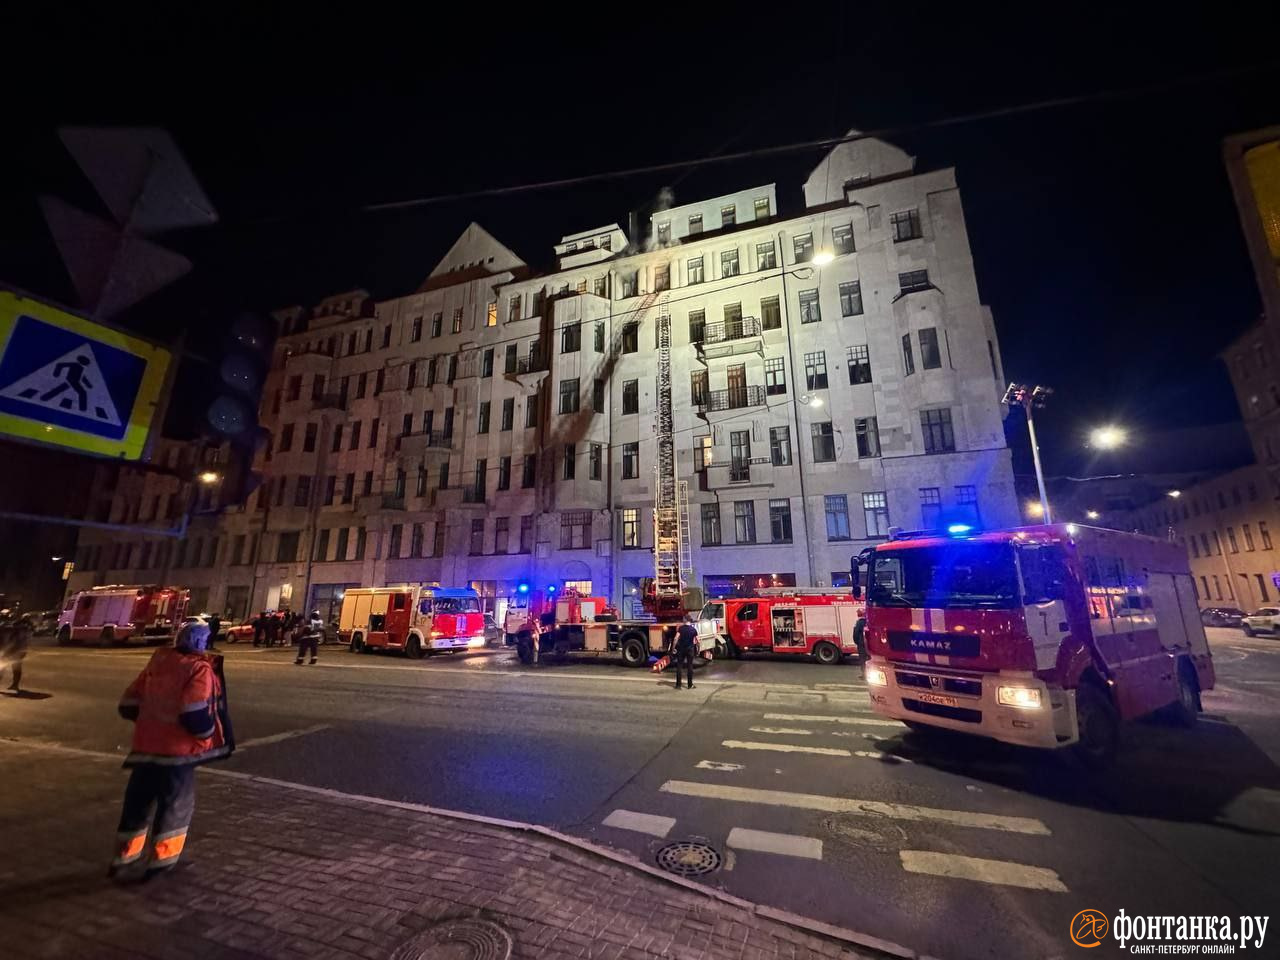 Из-за пожара на Некрасова эвакуировали 4 человек. Загорелась квартира на последнем этаже